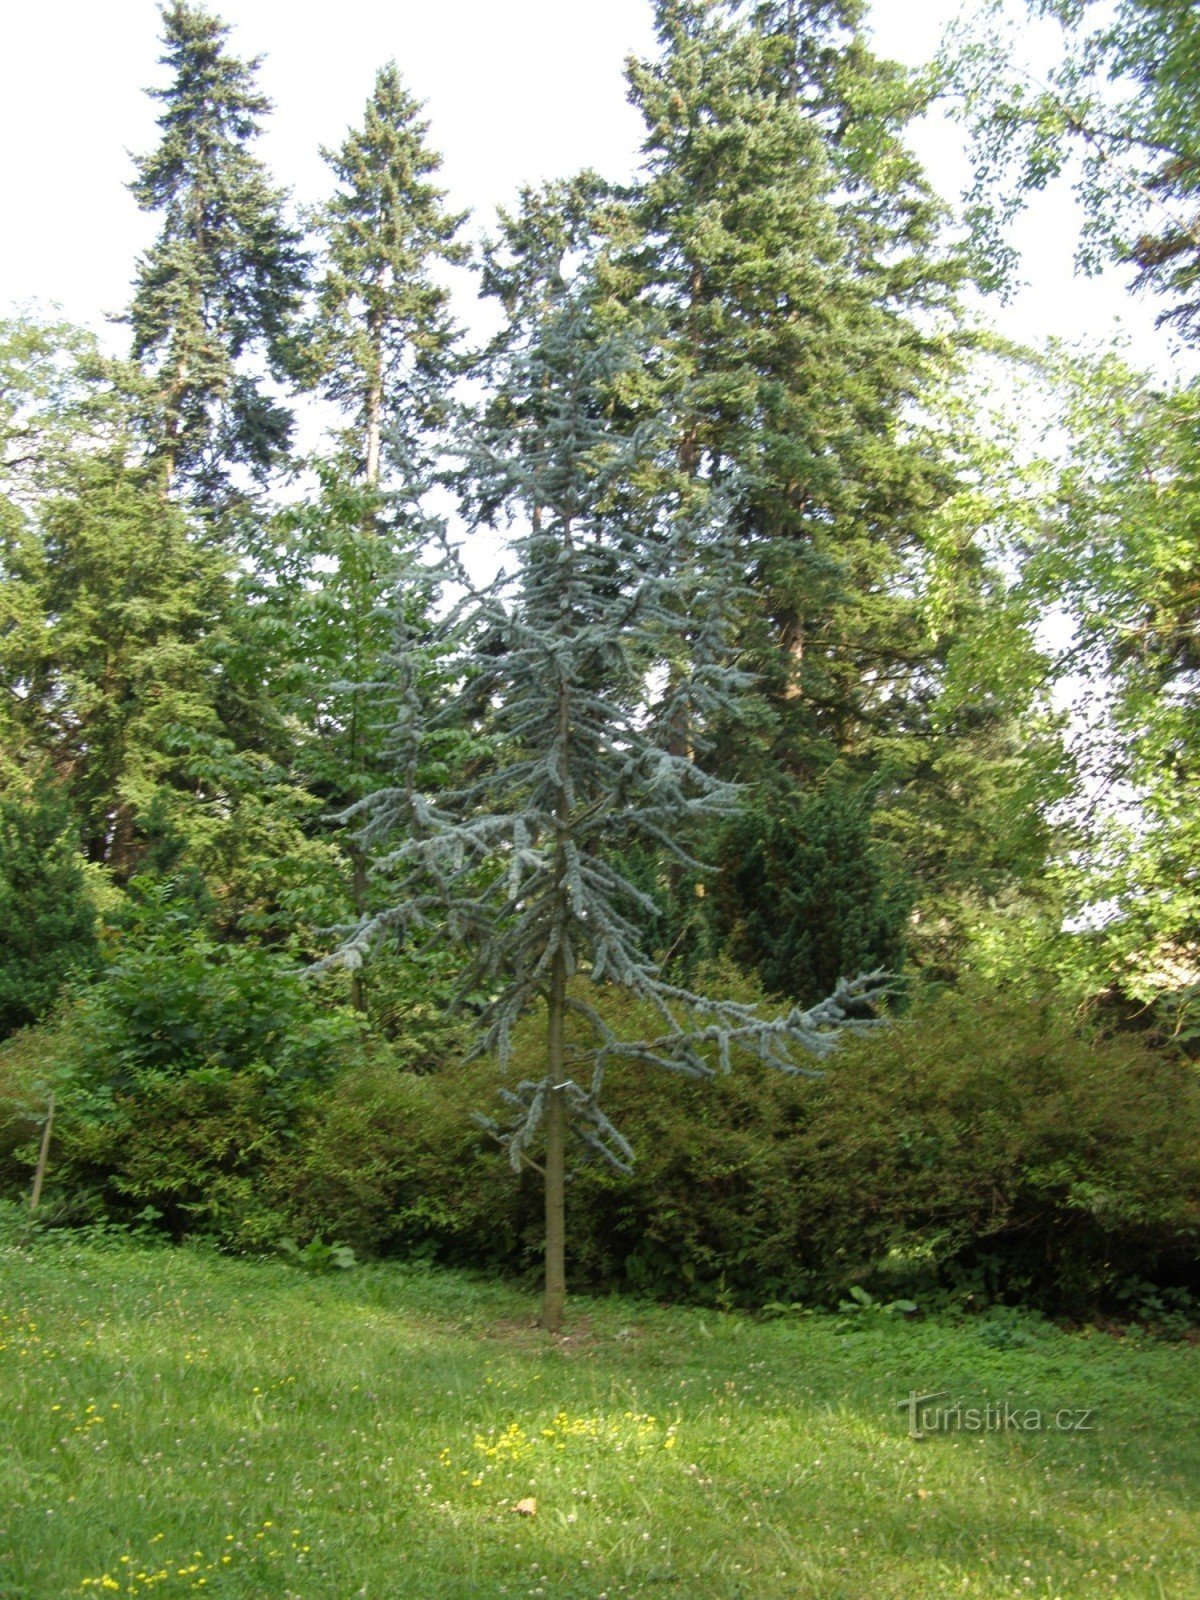 Arboretum Nový Dvůr koło Opawy